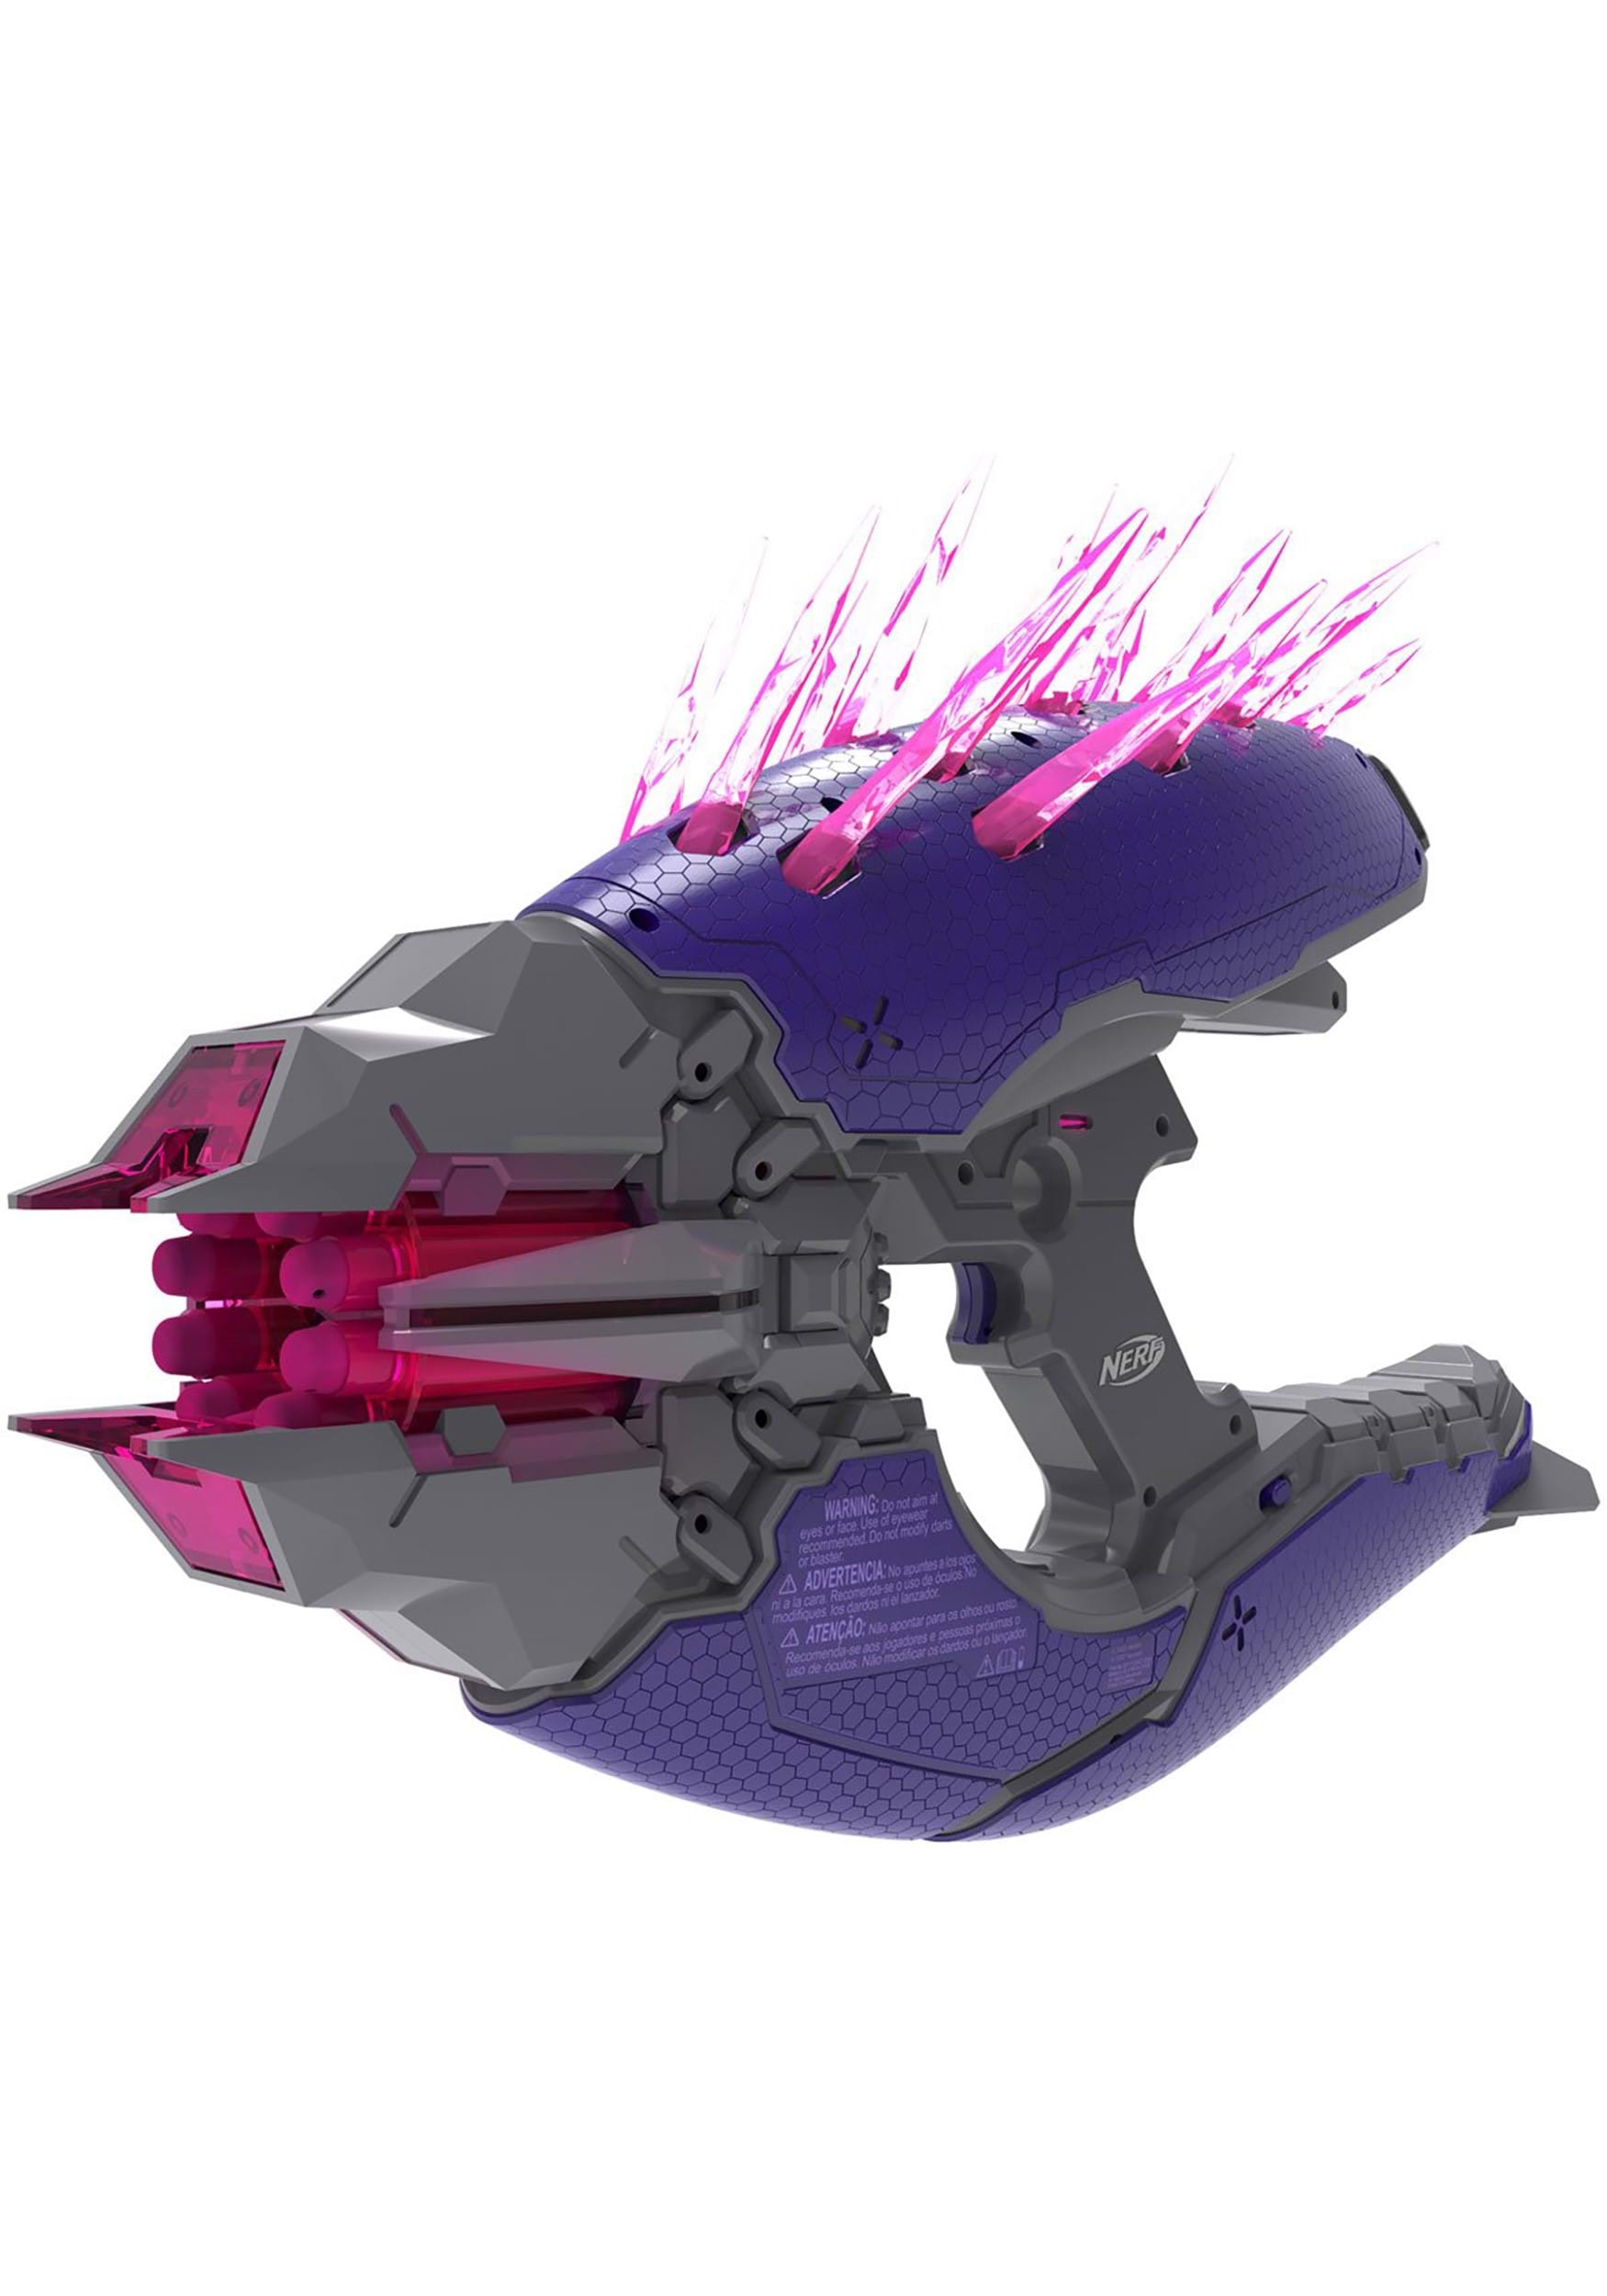 Halo Nerf LMTD Needler Blaster